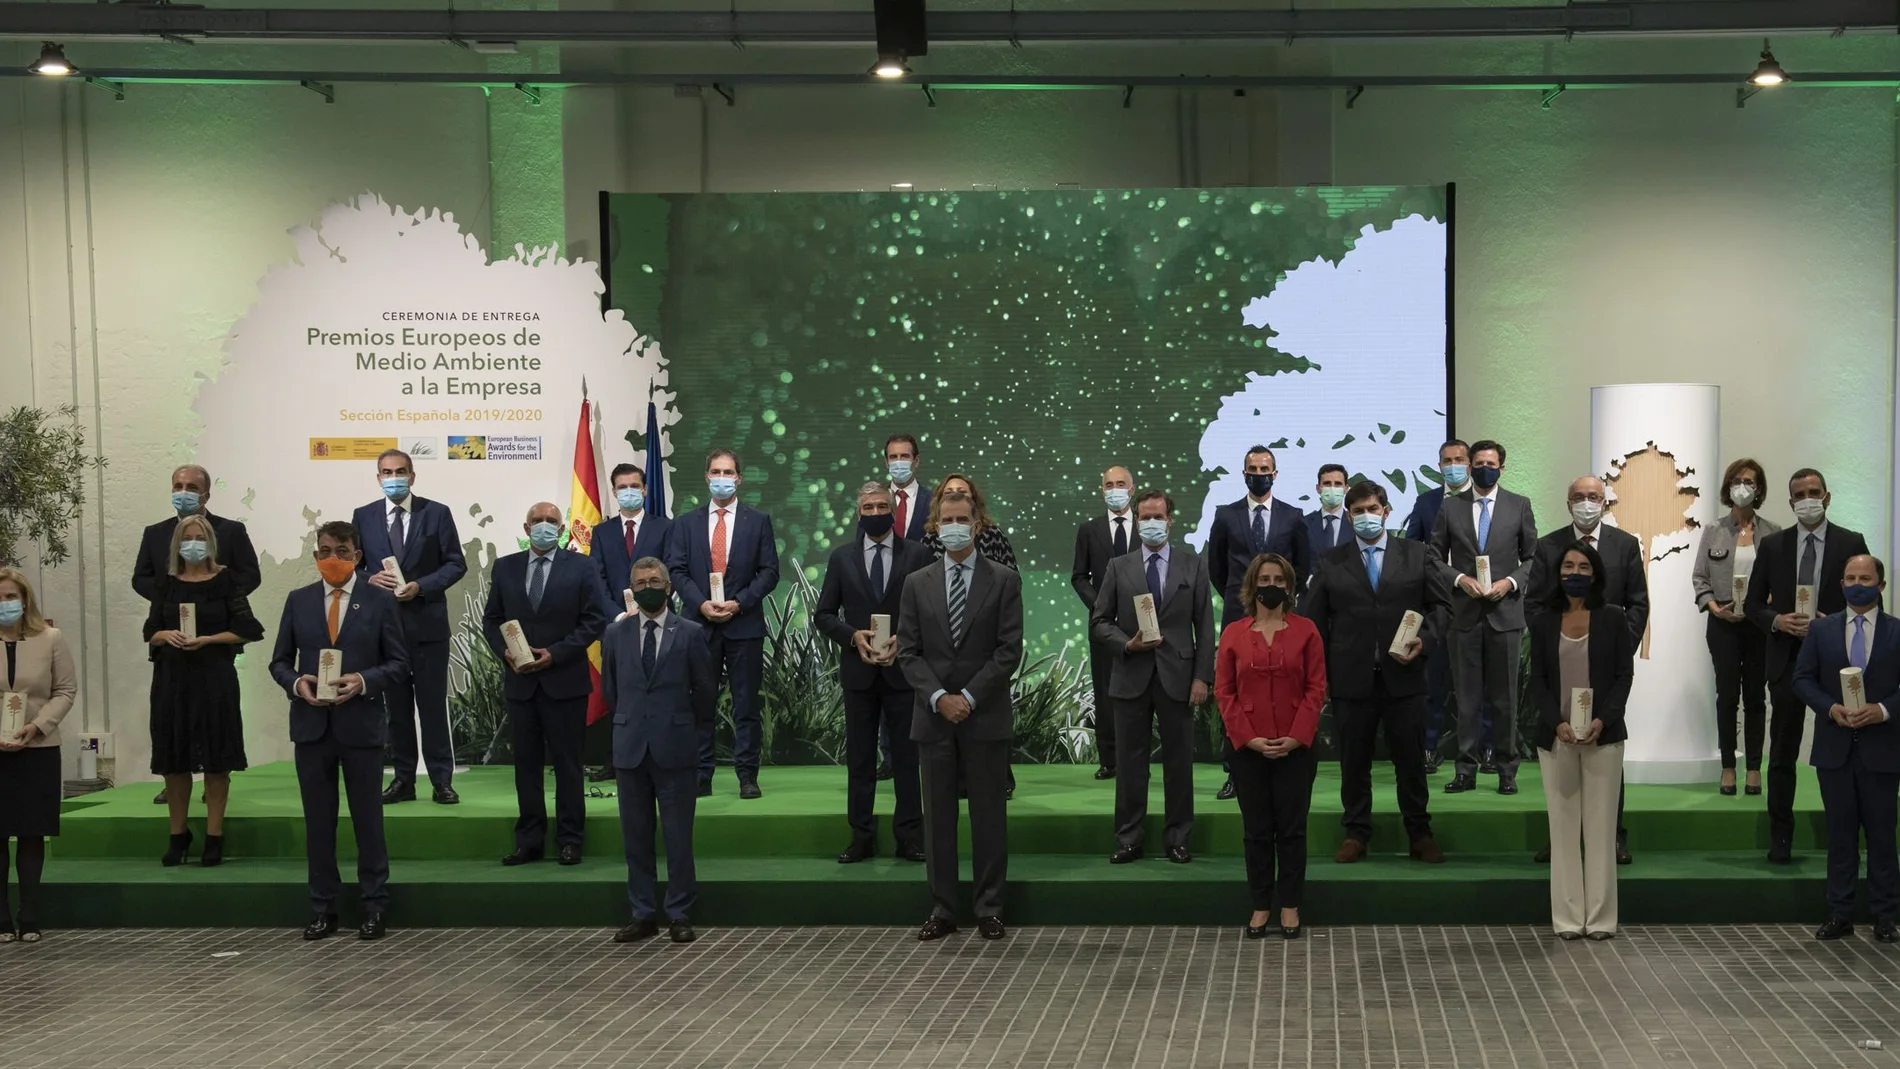 Sección española de los Premios Europeos de Medio Ambiente a la Empresa, presididos por el Rey Felipe VI